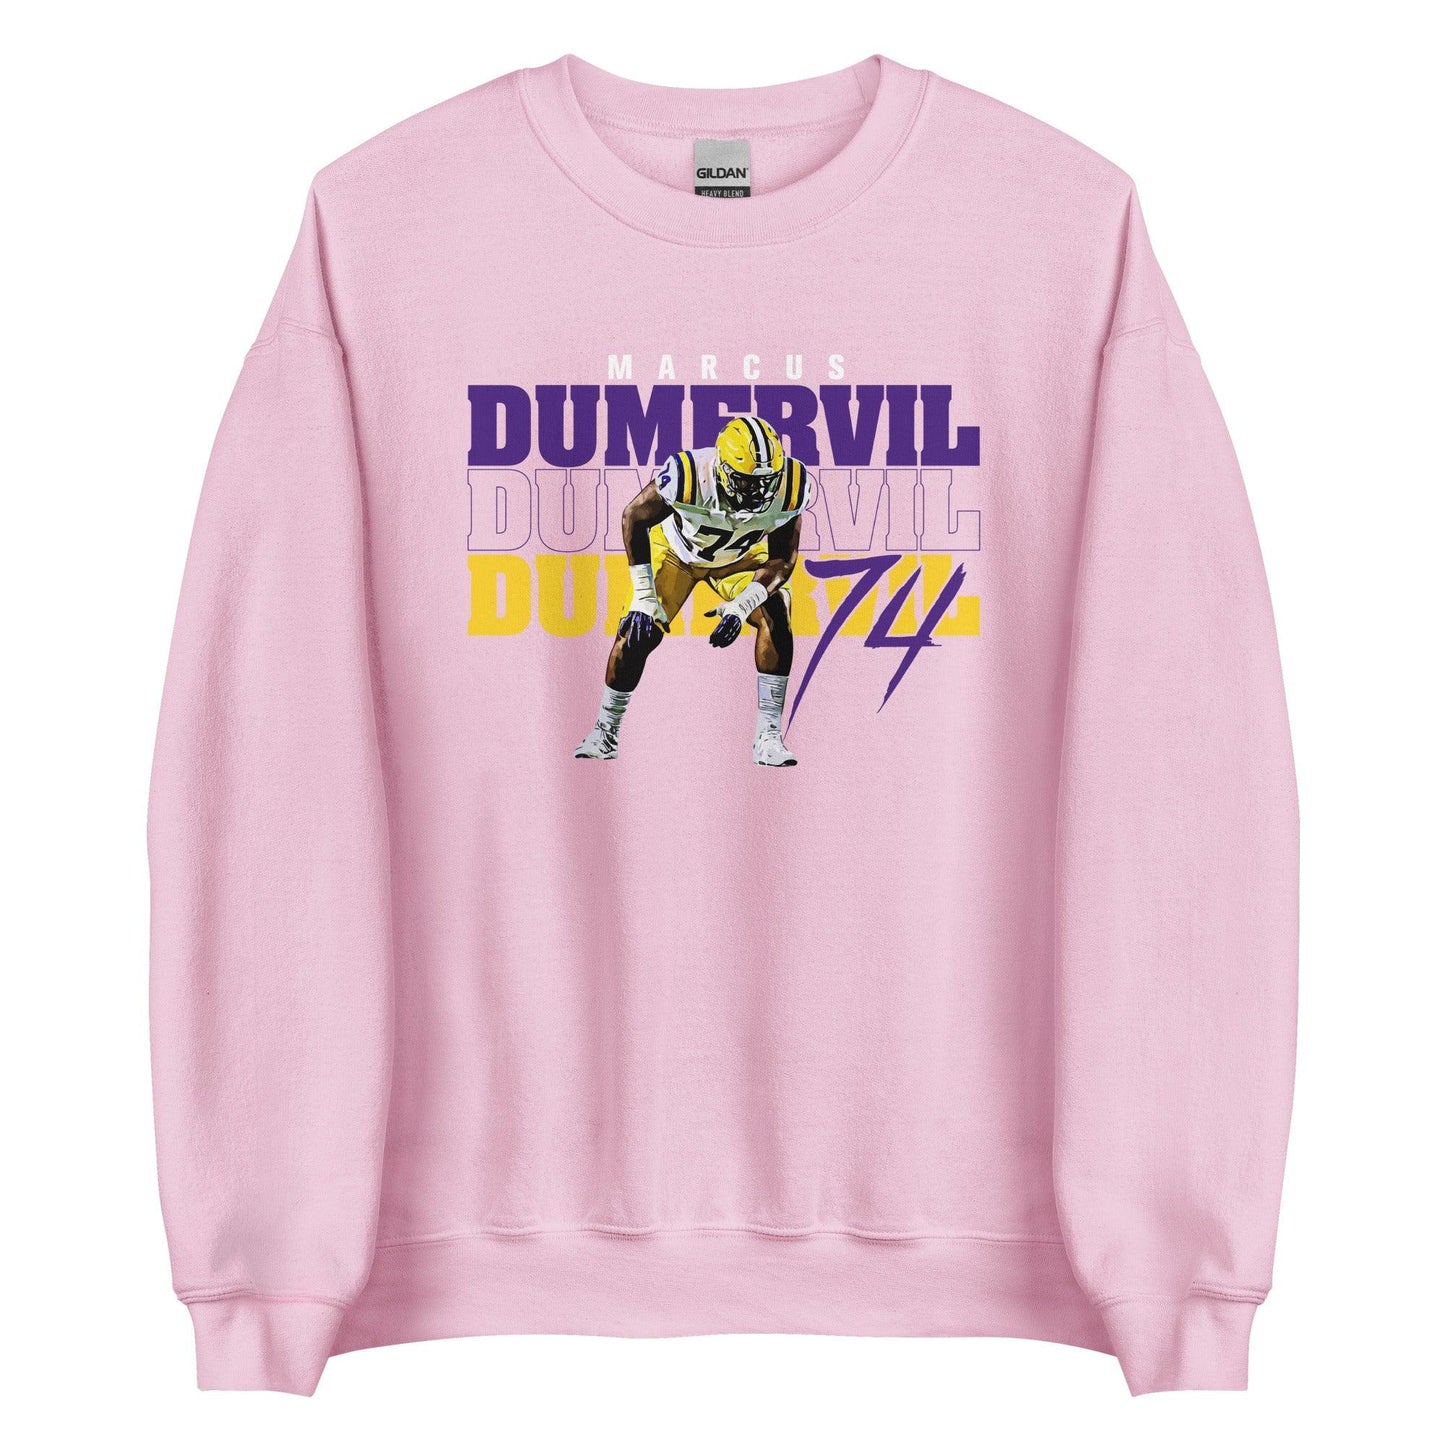 Marcus Dumervil "74" Sweatshirt - Fan Arch